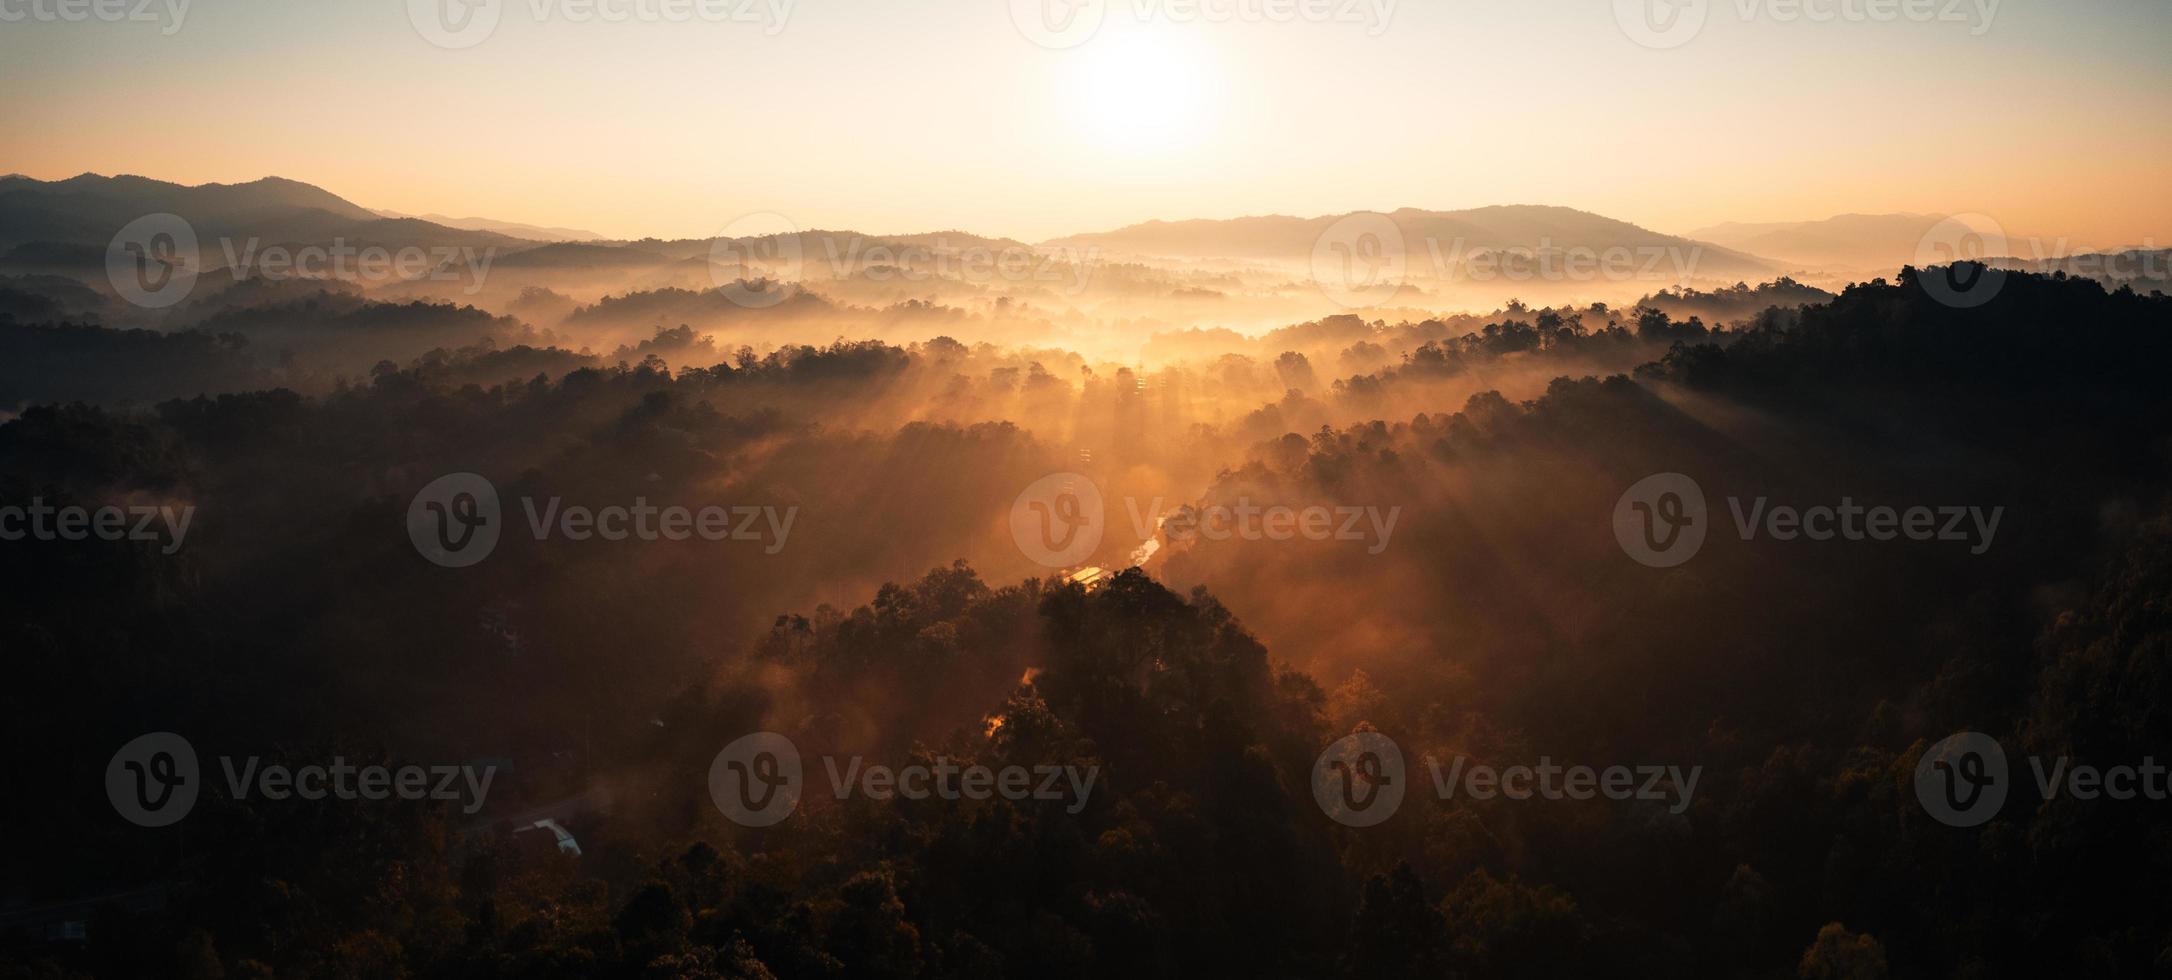 brouillard matinal doré dans la forêt photo